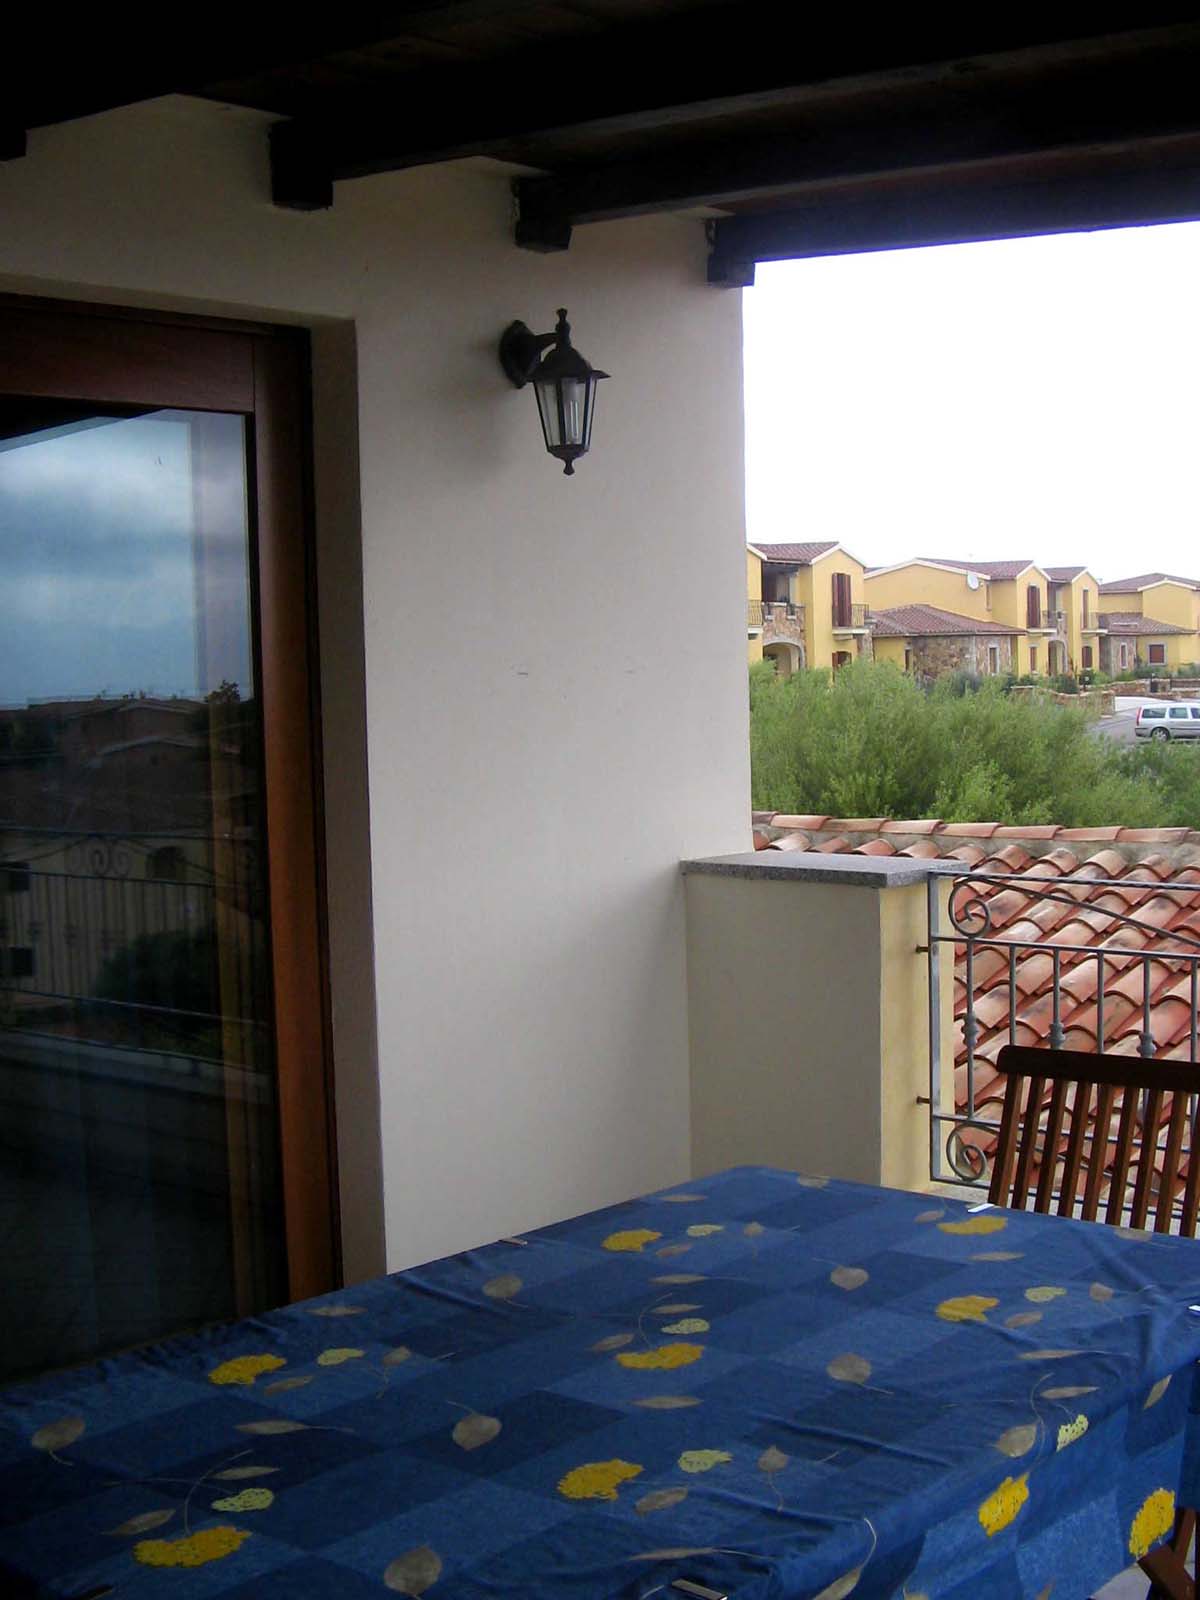 il terrazzo - Appartamento vacanze al mare vicino Olbia San Teodoro casa in Sardegna annunci affitto estate - Fotografie case in zona